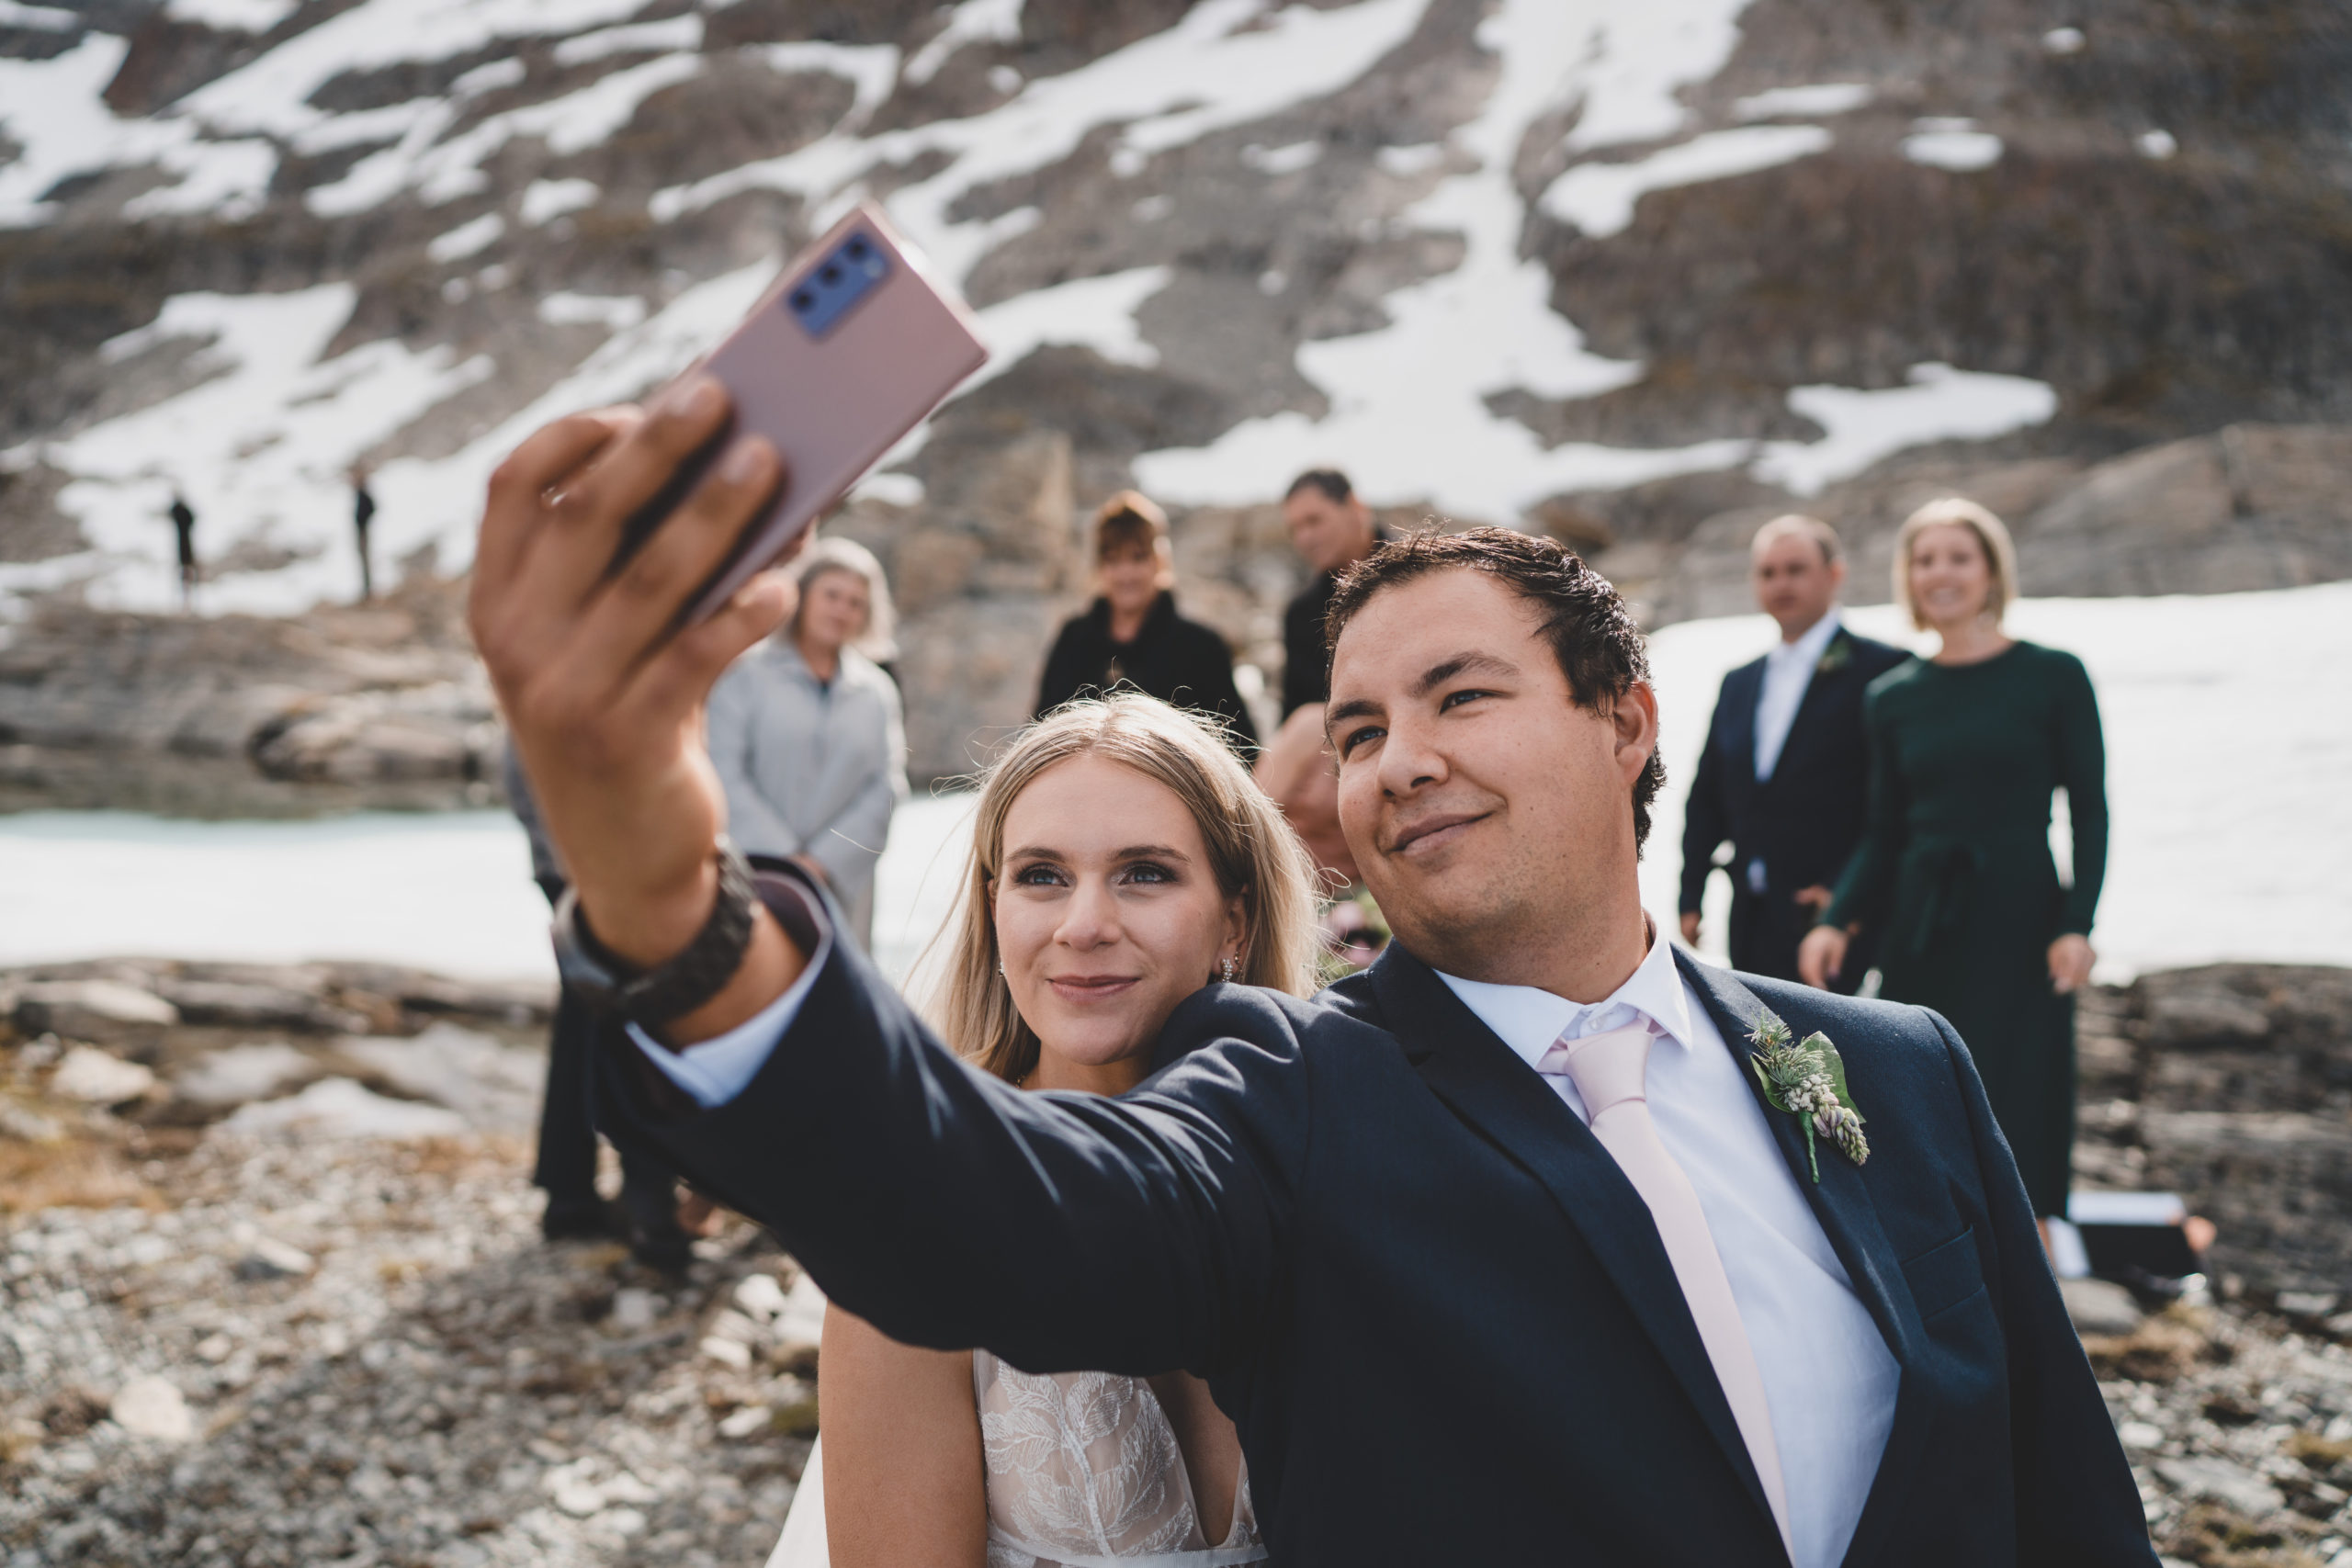 Bride and groom take selfie after wedding ceremony in Queenstown, New Zealand